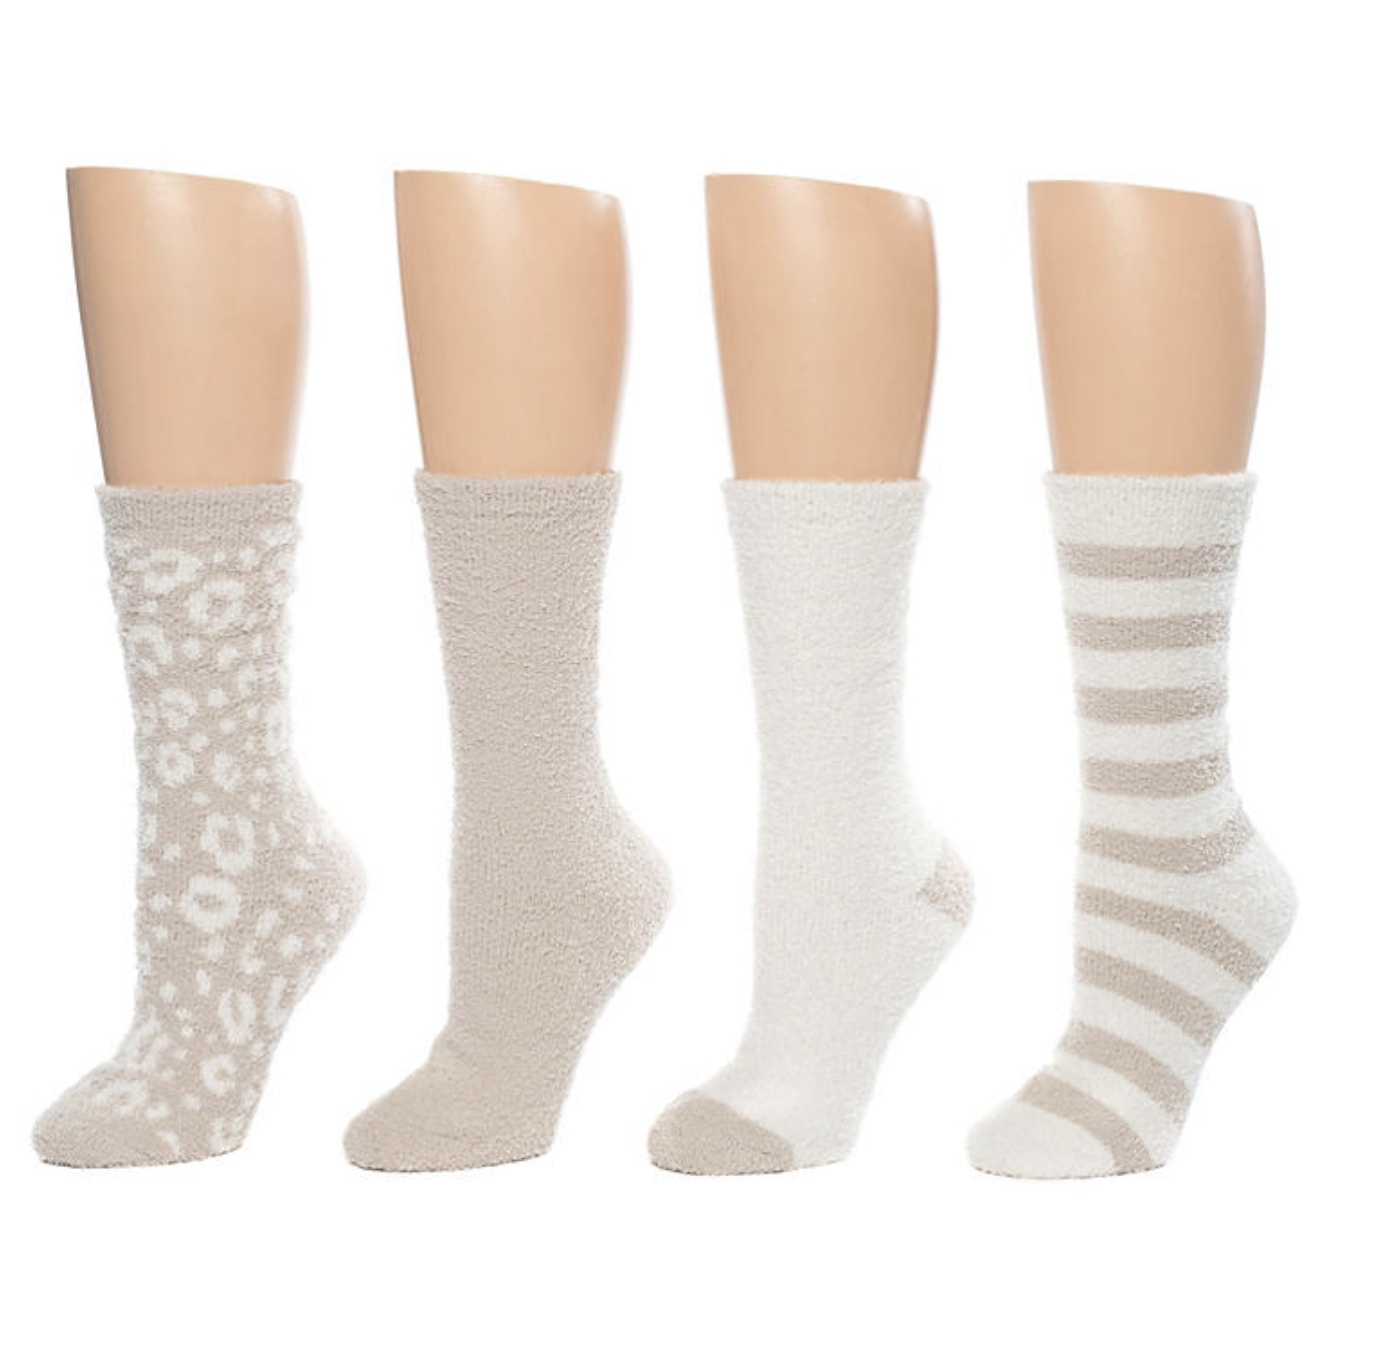 the four socks